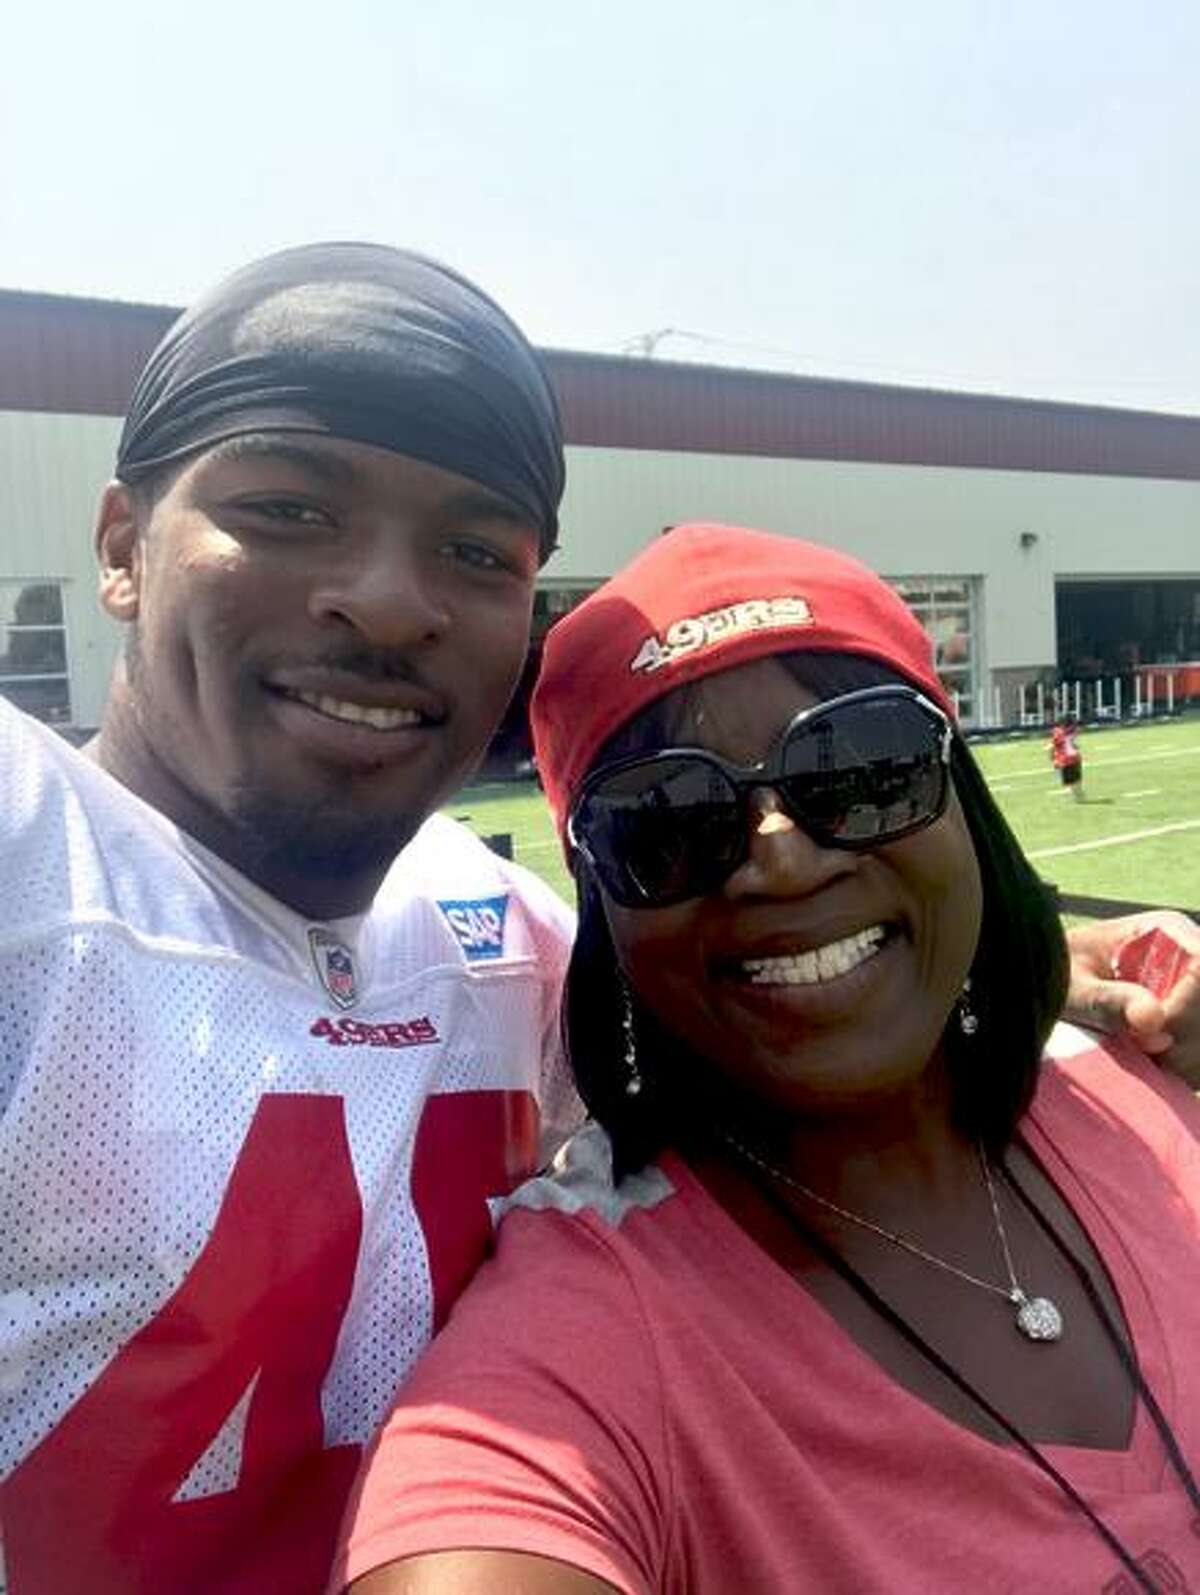 D.J. Reed and his mom, Linda, at the 49ers' facility in Santa Clara.